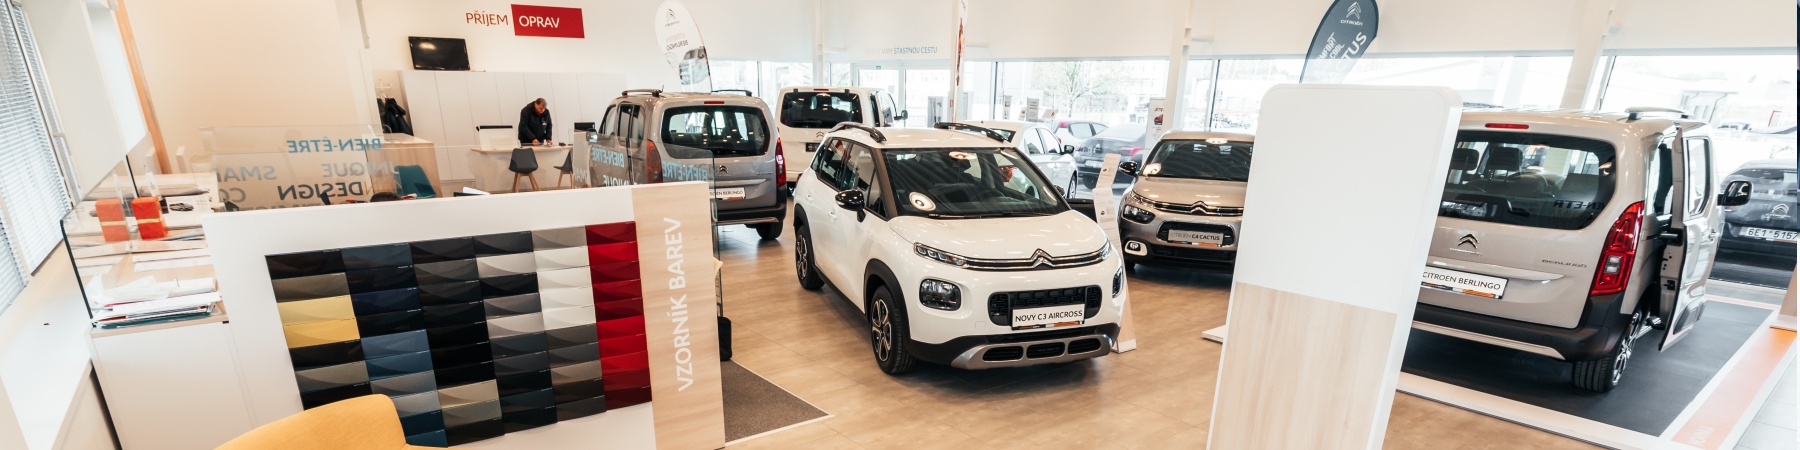 Navštivte nový showroom Citroën